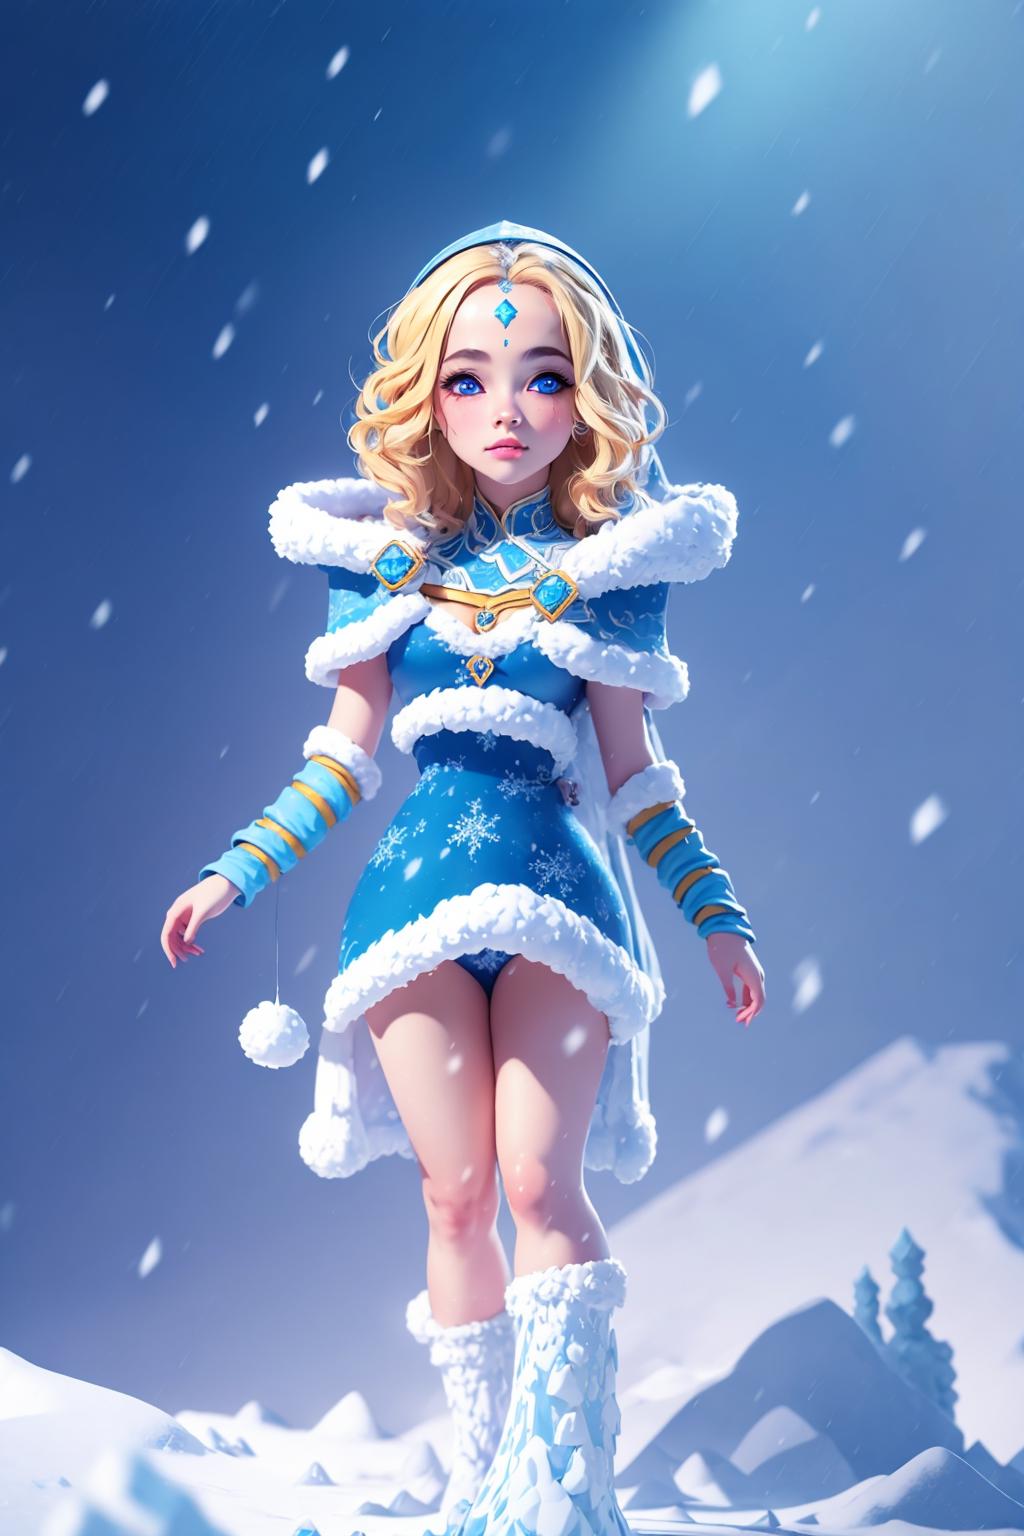 Crystal Maiden (Dota 2) image by lavryshe4ka